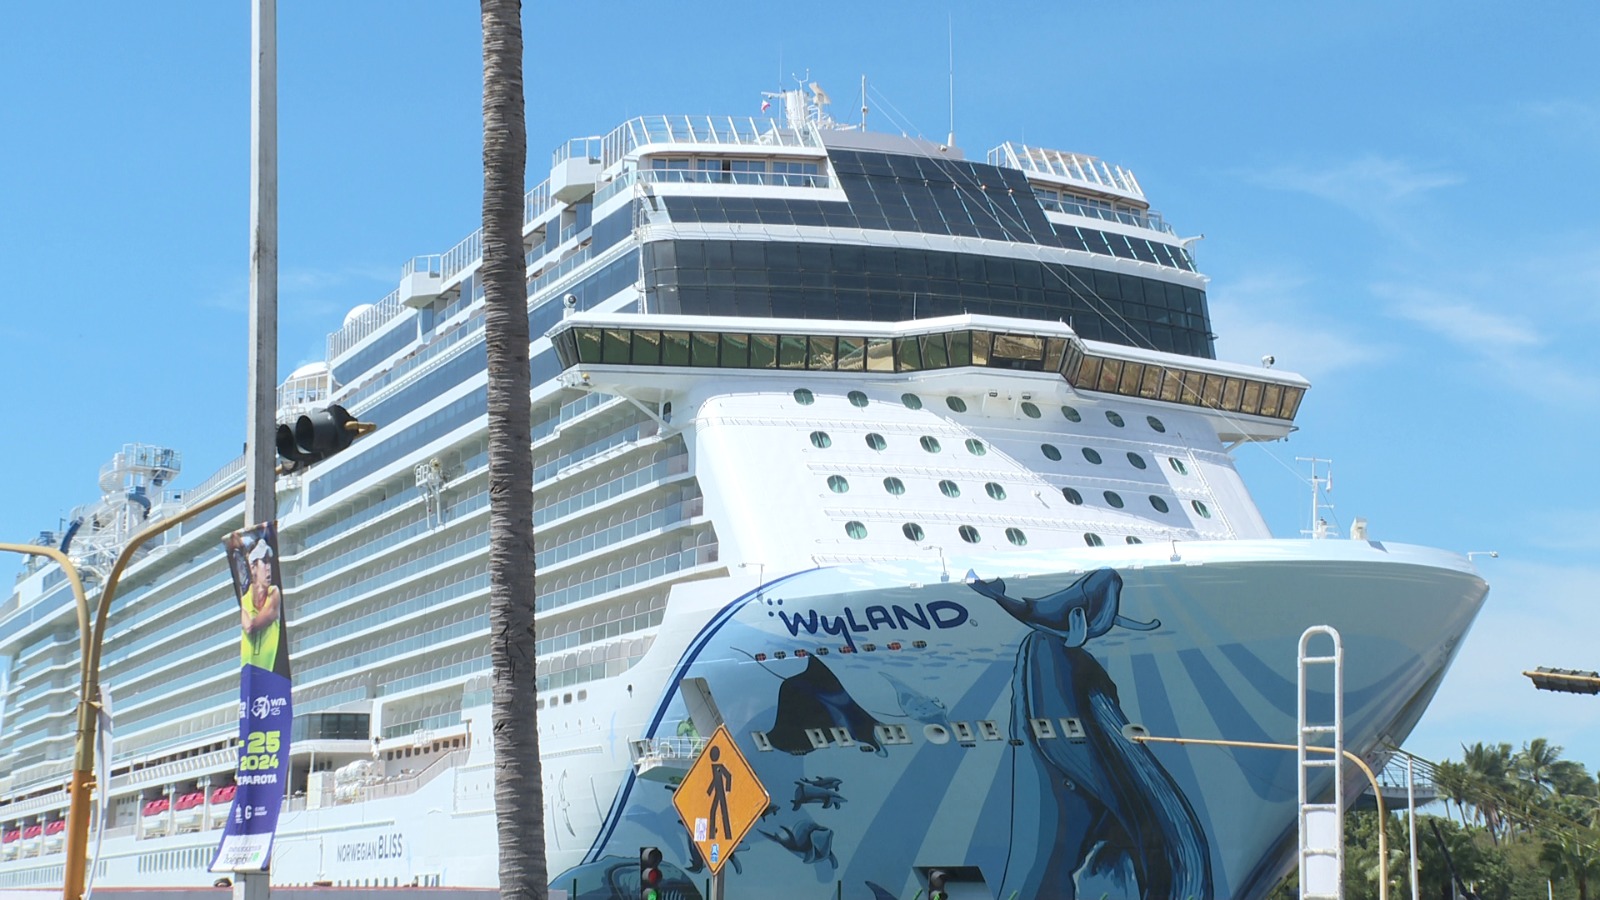 Disminuye arribo de cruceros internacionales a Vallarta en primer trimestre del año